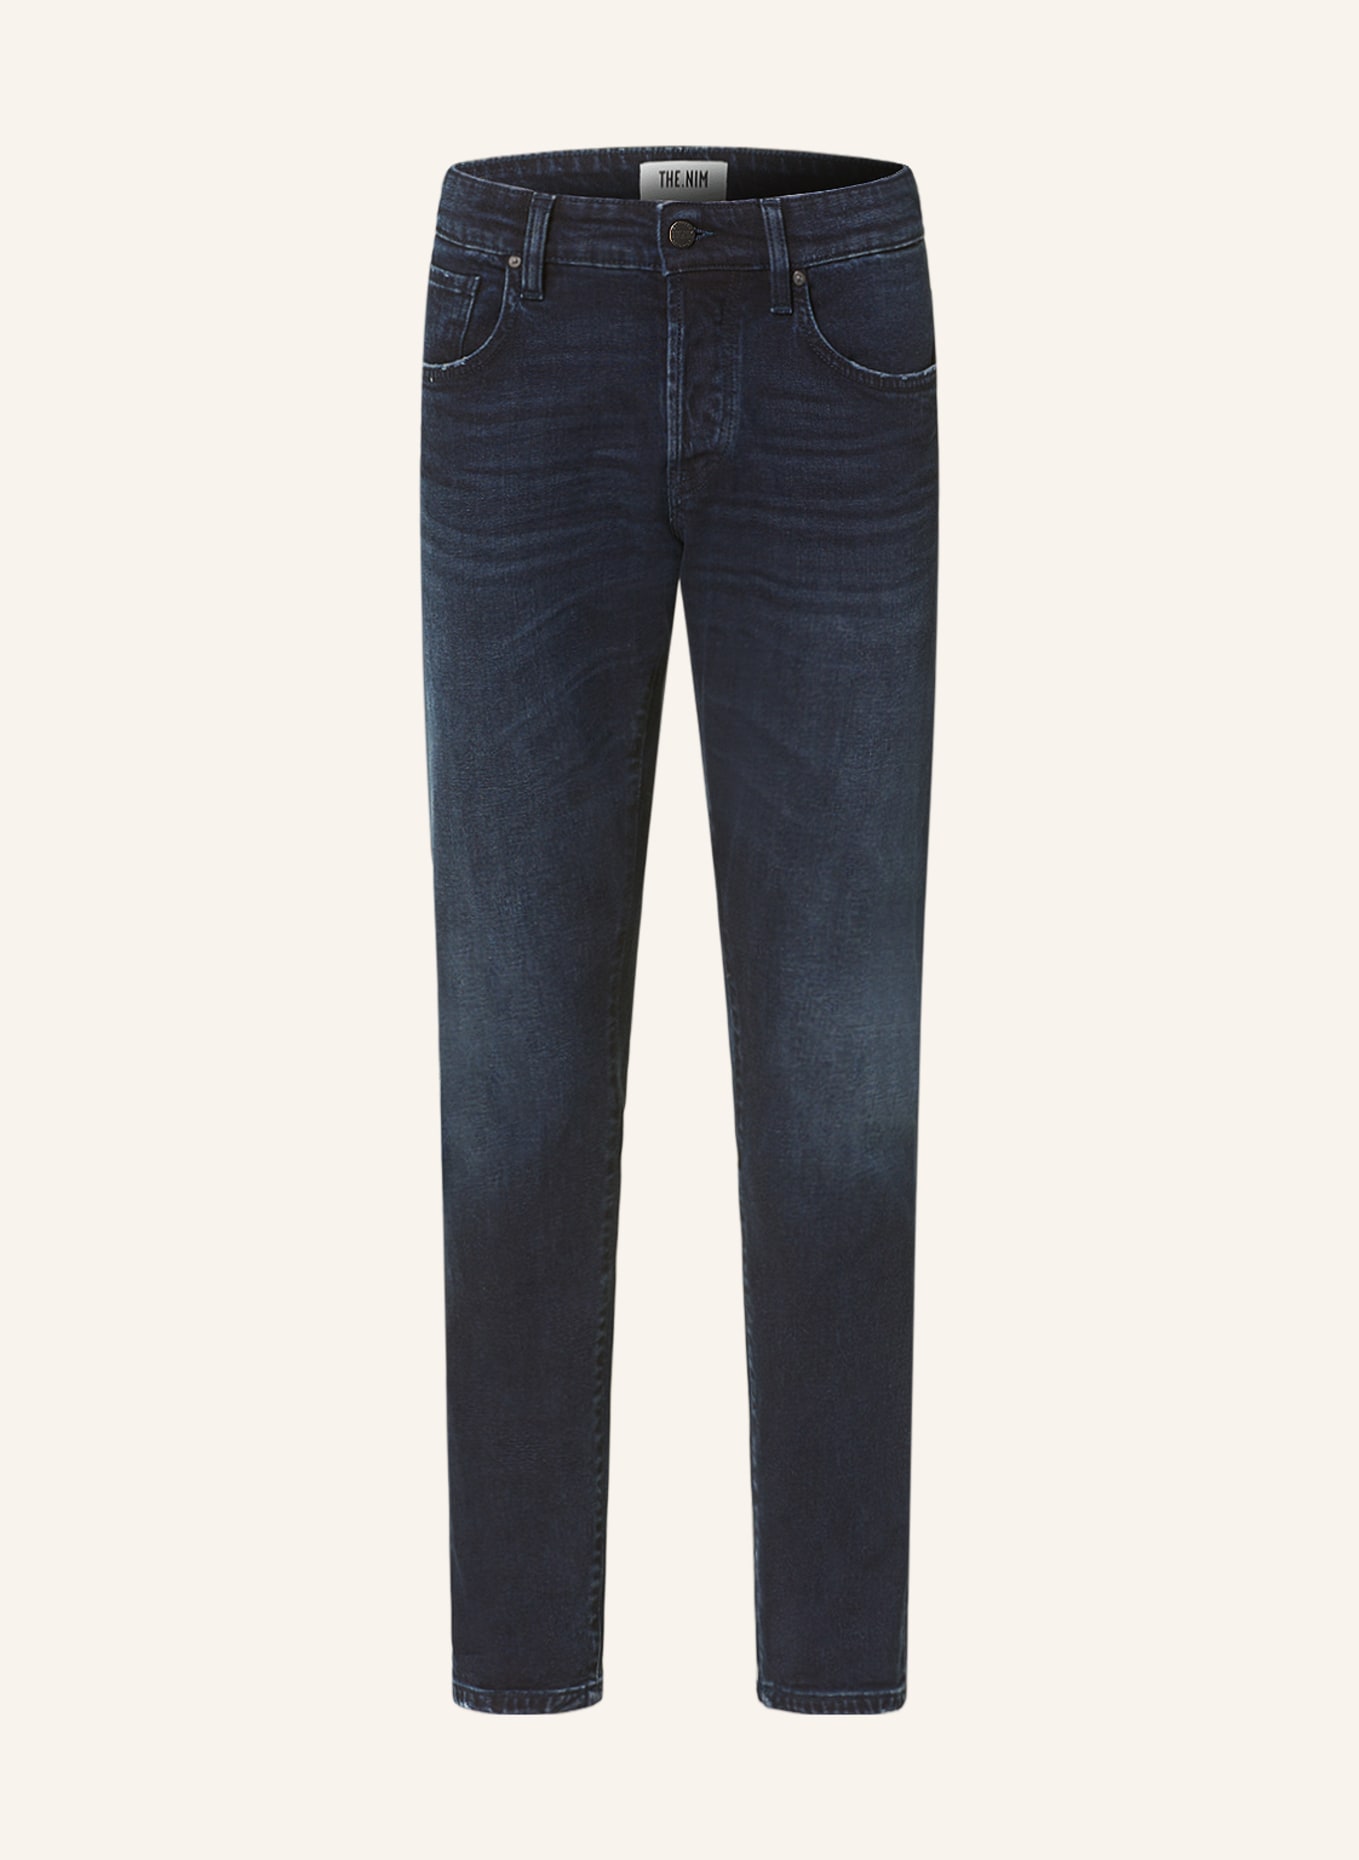 THE.NIM STANDARD Jeans DYLAN Slim Fit, Farbe: W752-BBL BLUE BLACK (Bild 1)